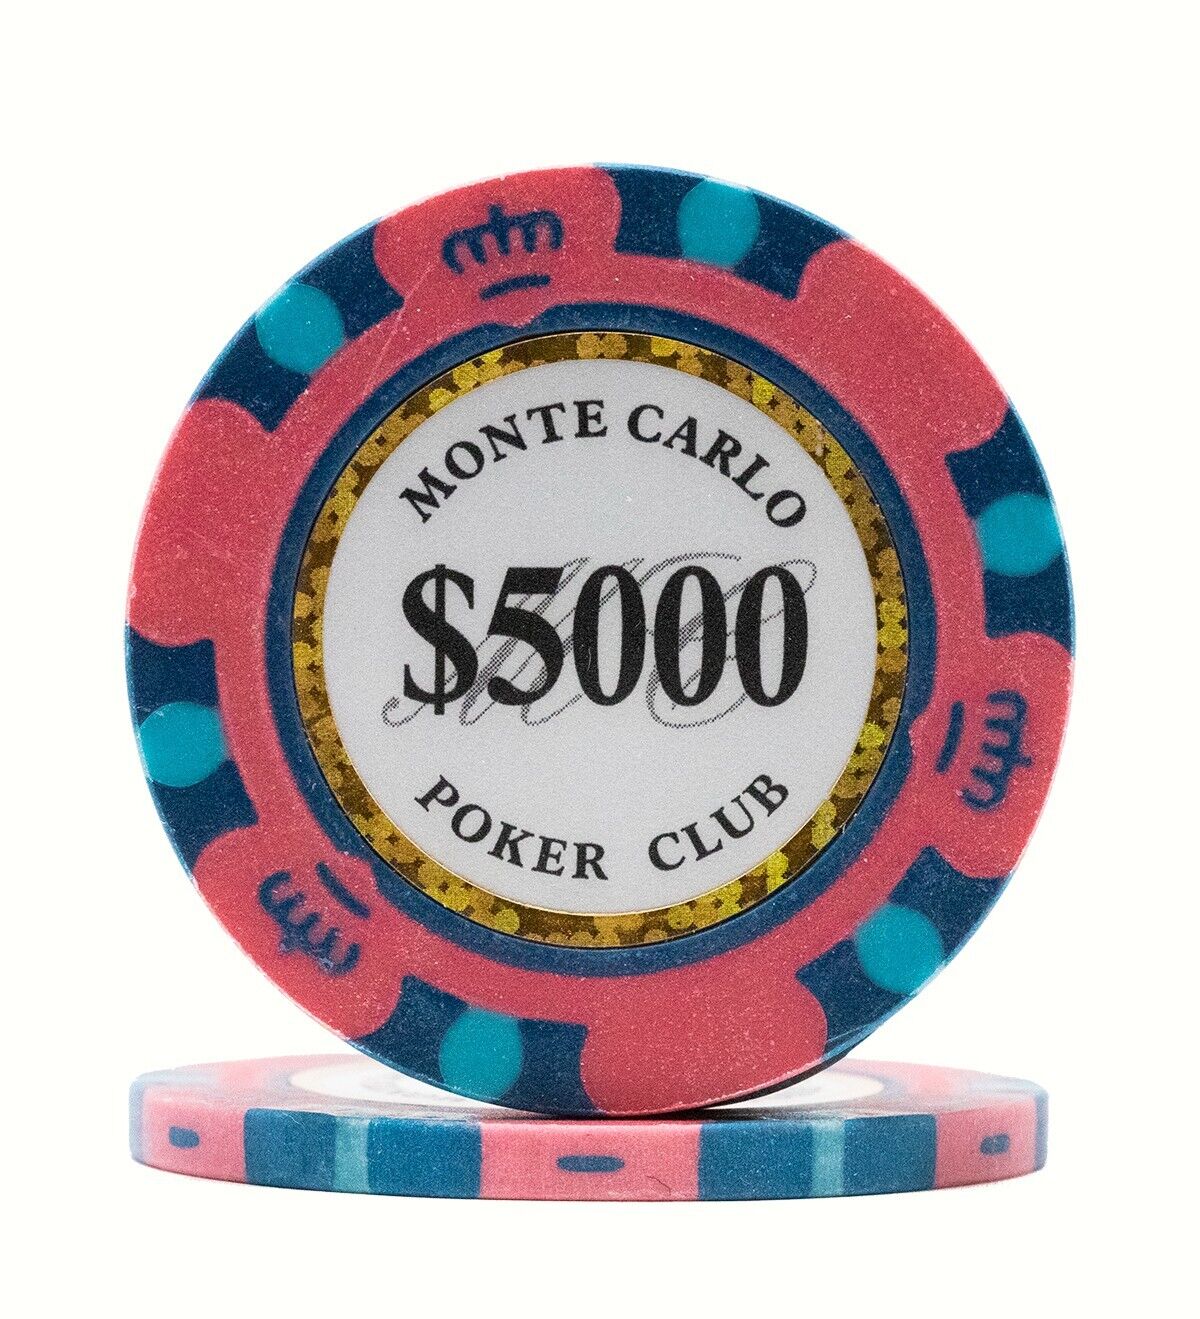 100 Da Vinci Premium 14 gr Clay Monte Carlo Poker Chips, Pink $5000 Denomination